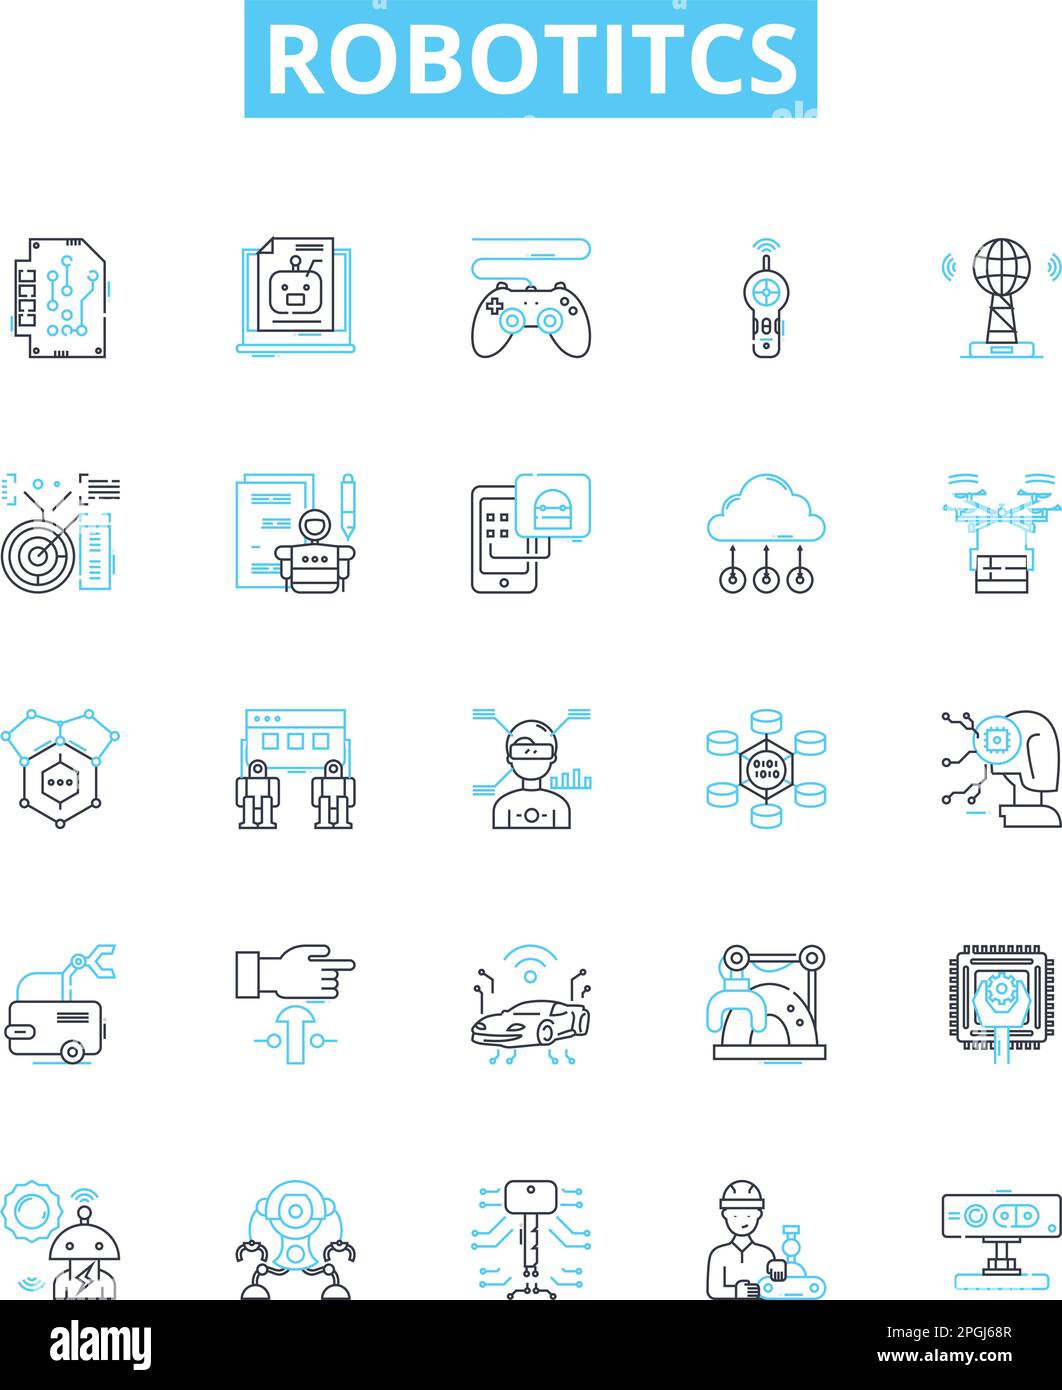 Robotitcs vector line icons set. Robotics, Automation, AI, Programmable, Machines, Autonomous, Networks illustration outline concept symbols and signs Stock Vector